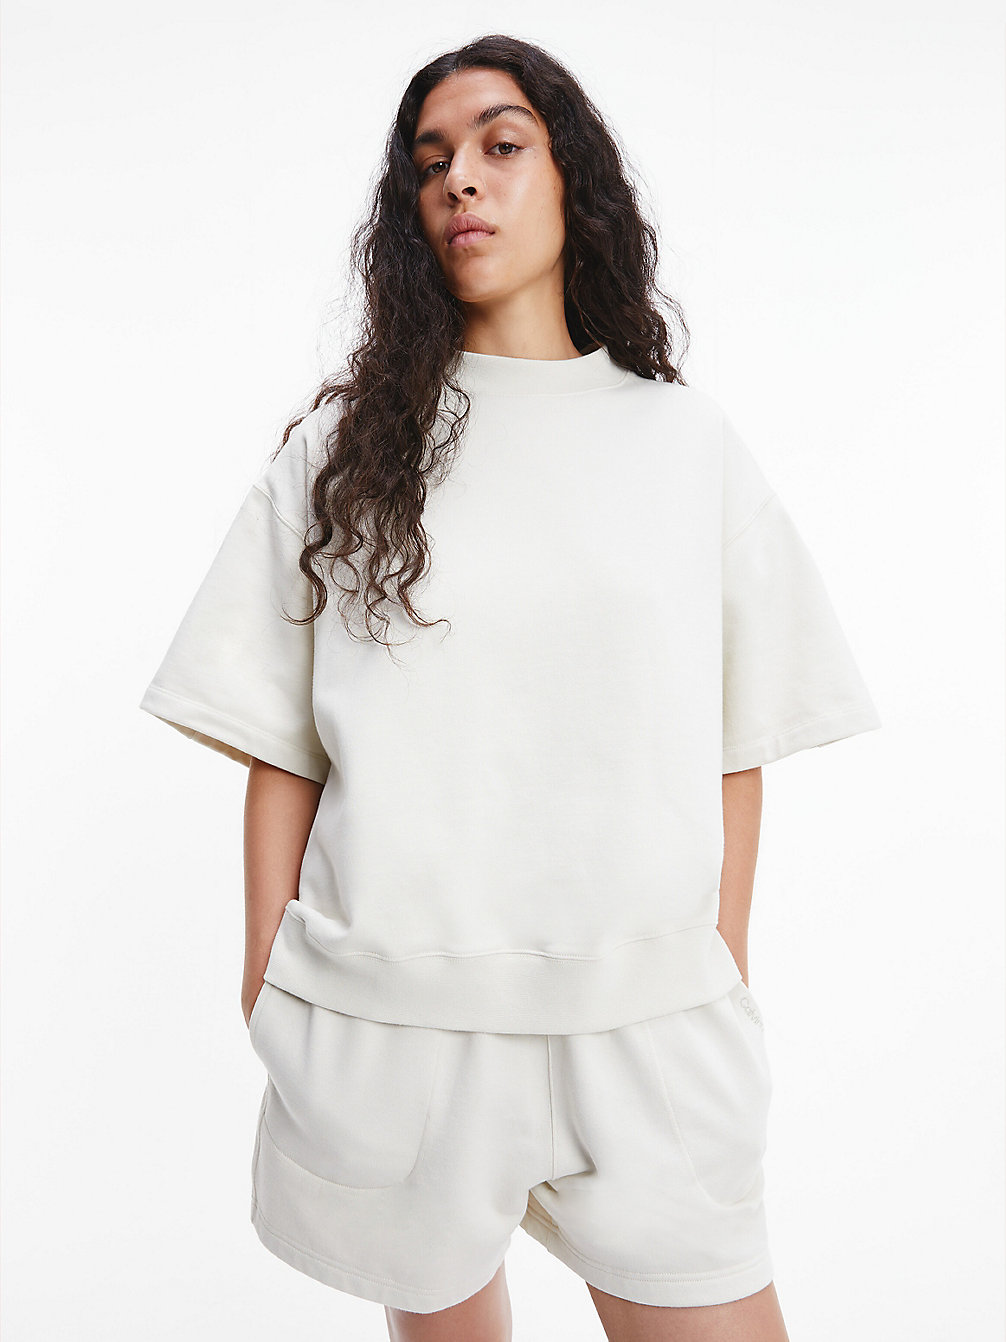 BONE WHITE Sweat-Shirt À Manches Courtes Unisexe - CK Standards undefined unisex Calvin Klein